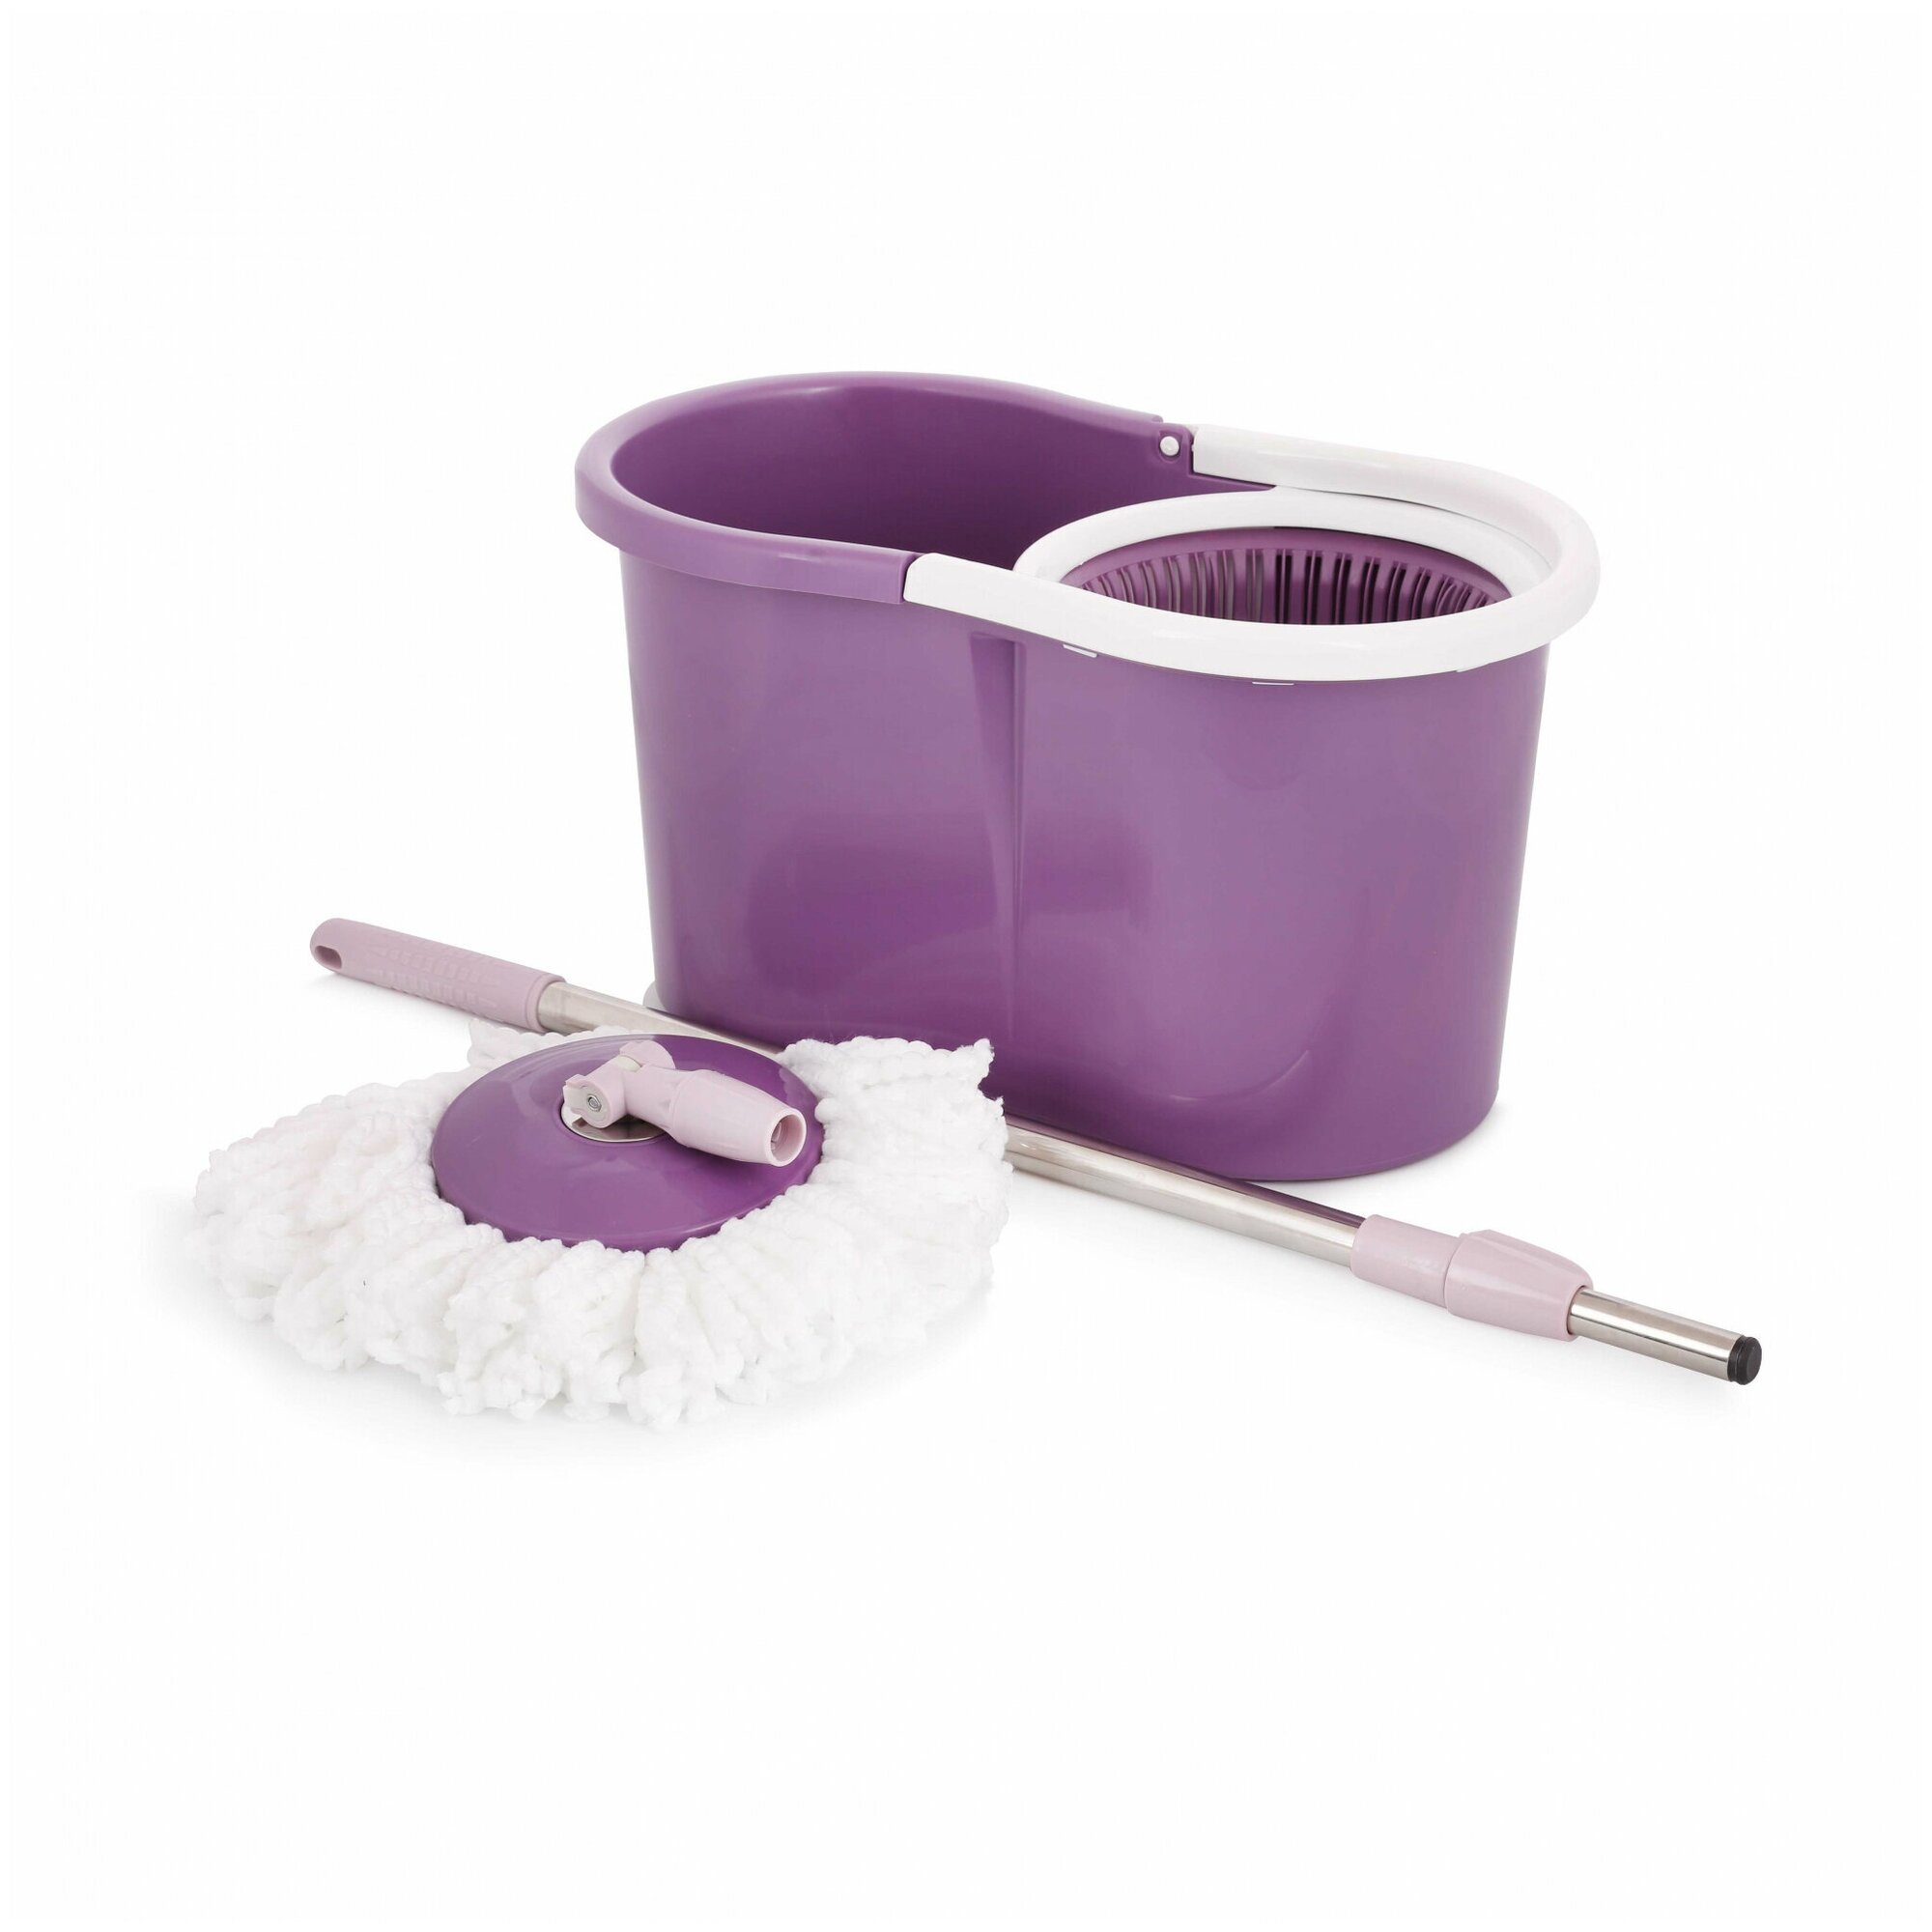 Комплект для мытья полов, цвет фиолетовый: ведро 15л с механизмом отжима, швабра с вращающимся диском-насадкой с длинным ворсом, стальной ручкой 110см